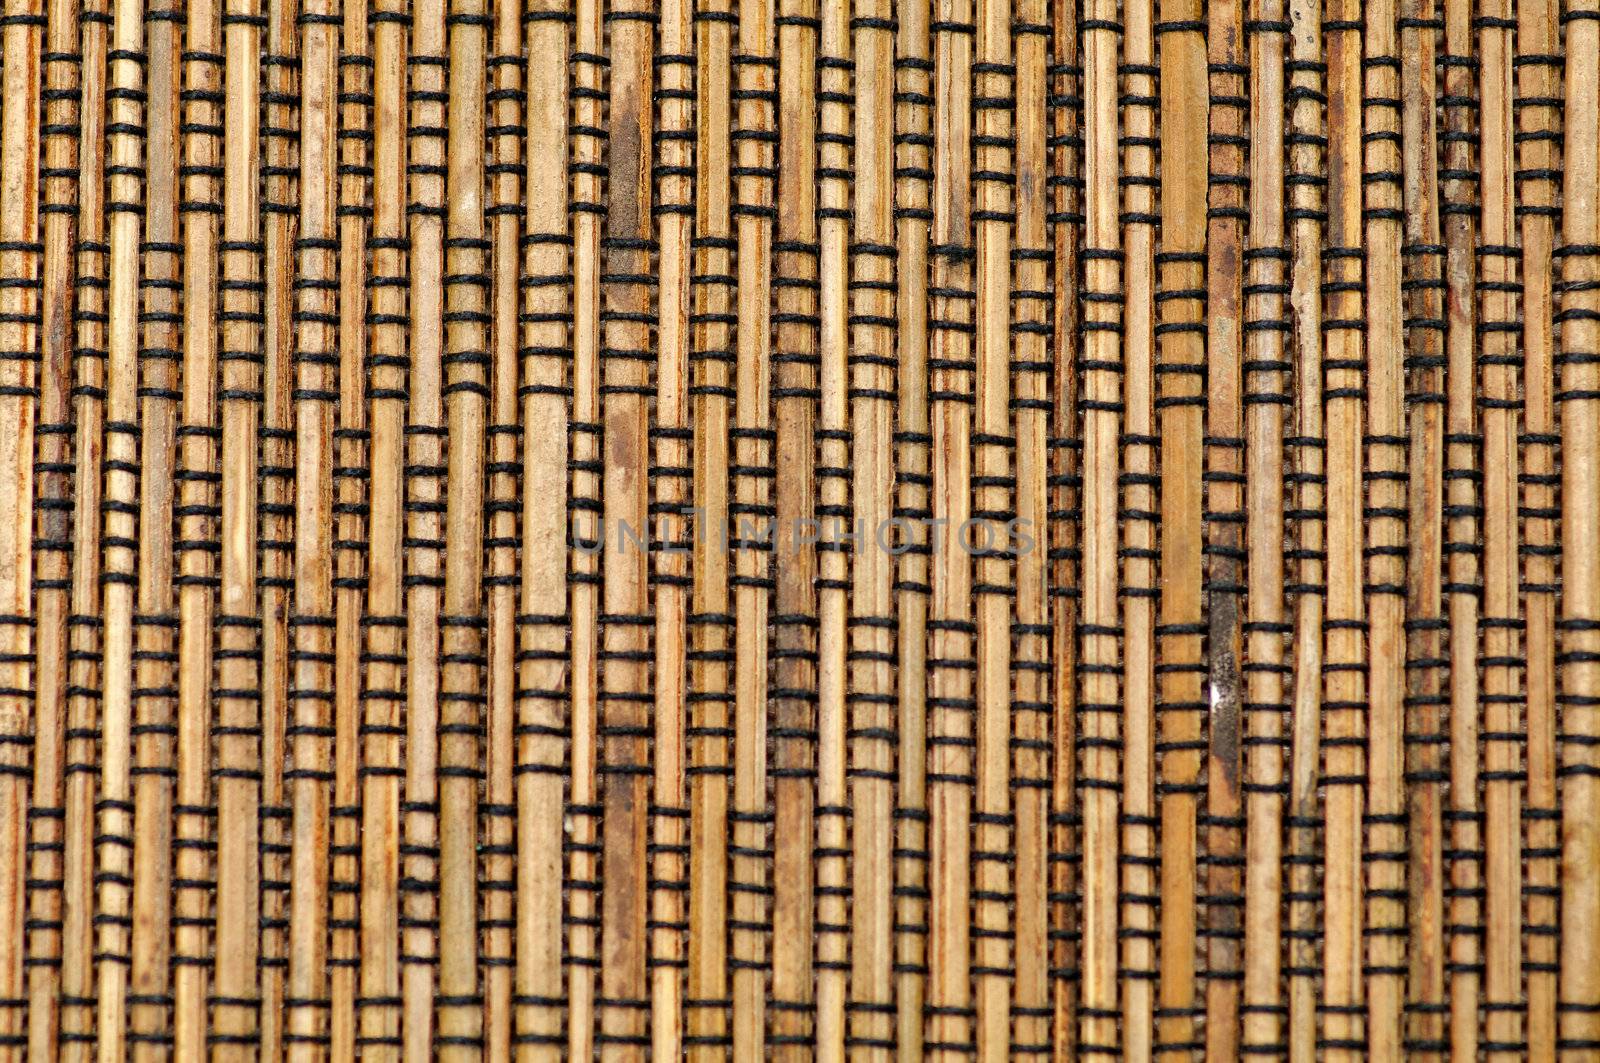 Bamboo mat by zhekos